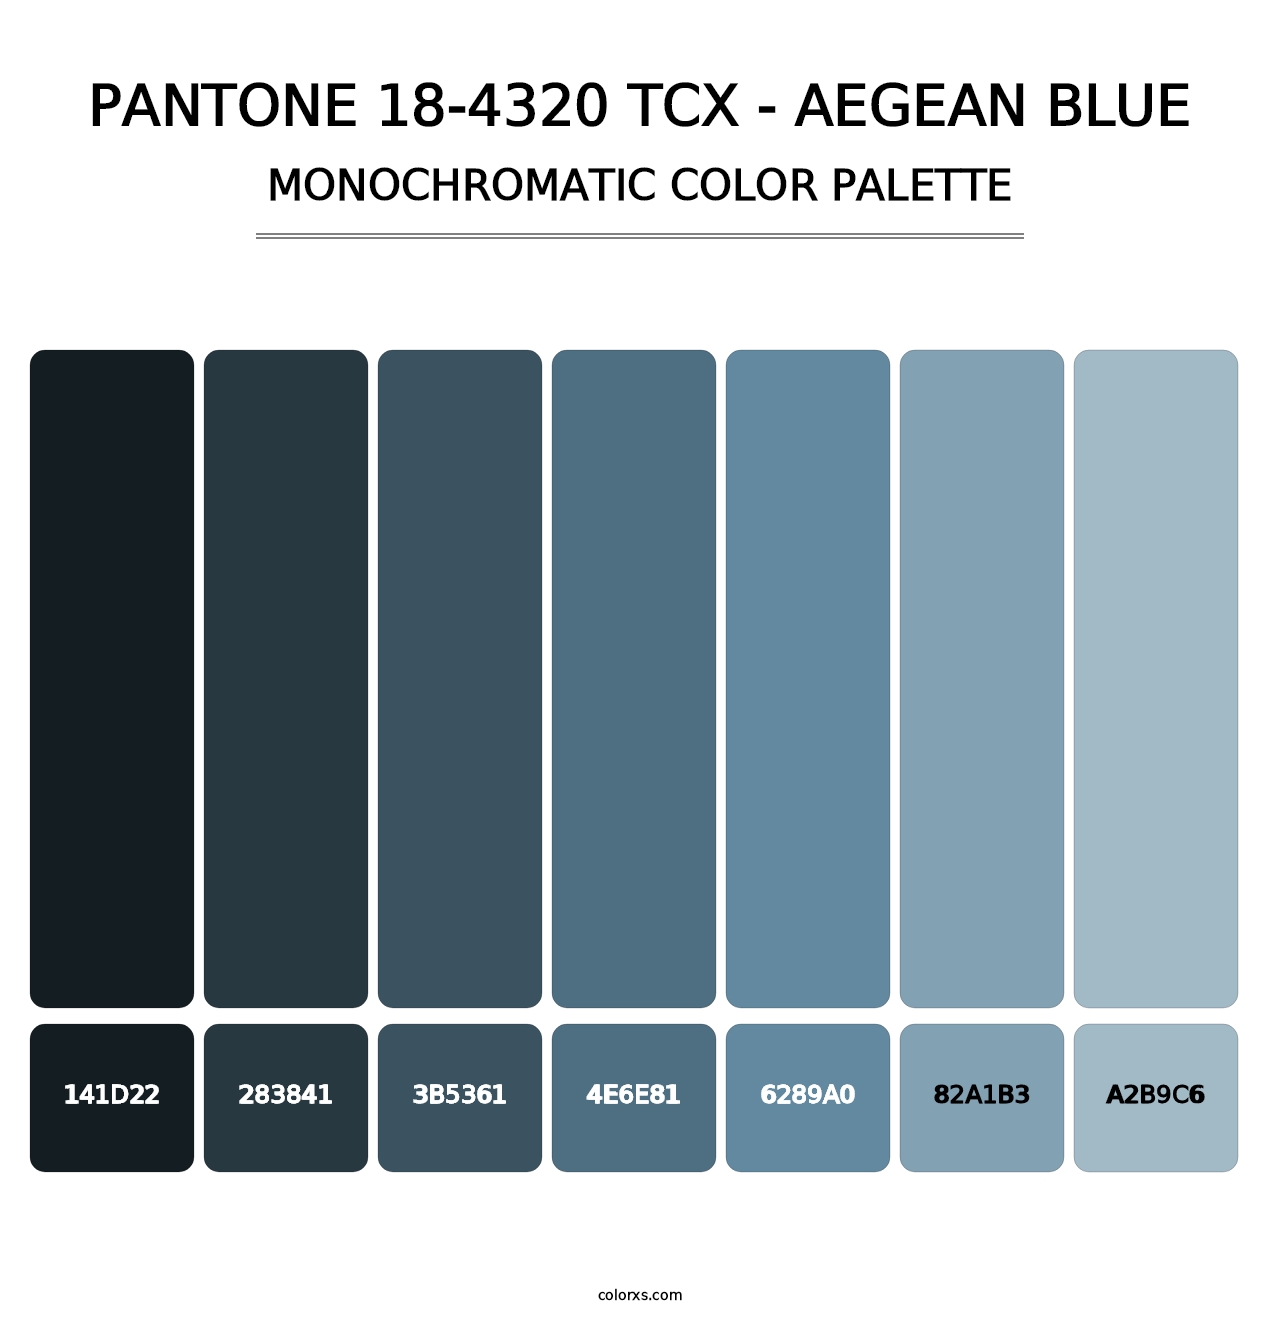 PANTONE 18-4320 TCX - Aegean Blue - Monochromatic Color Palette